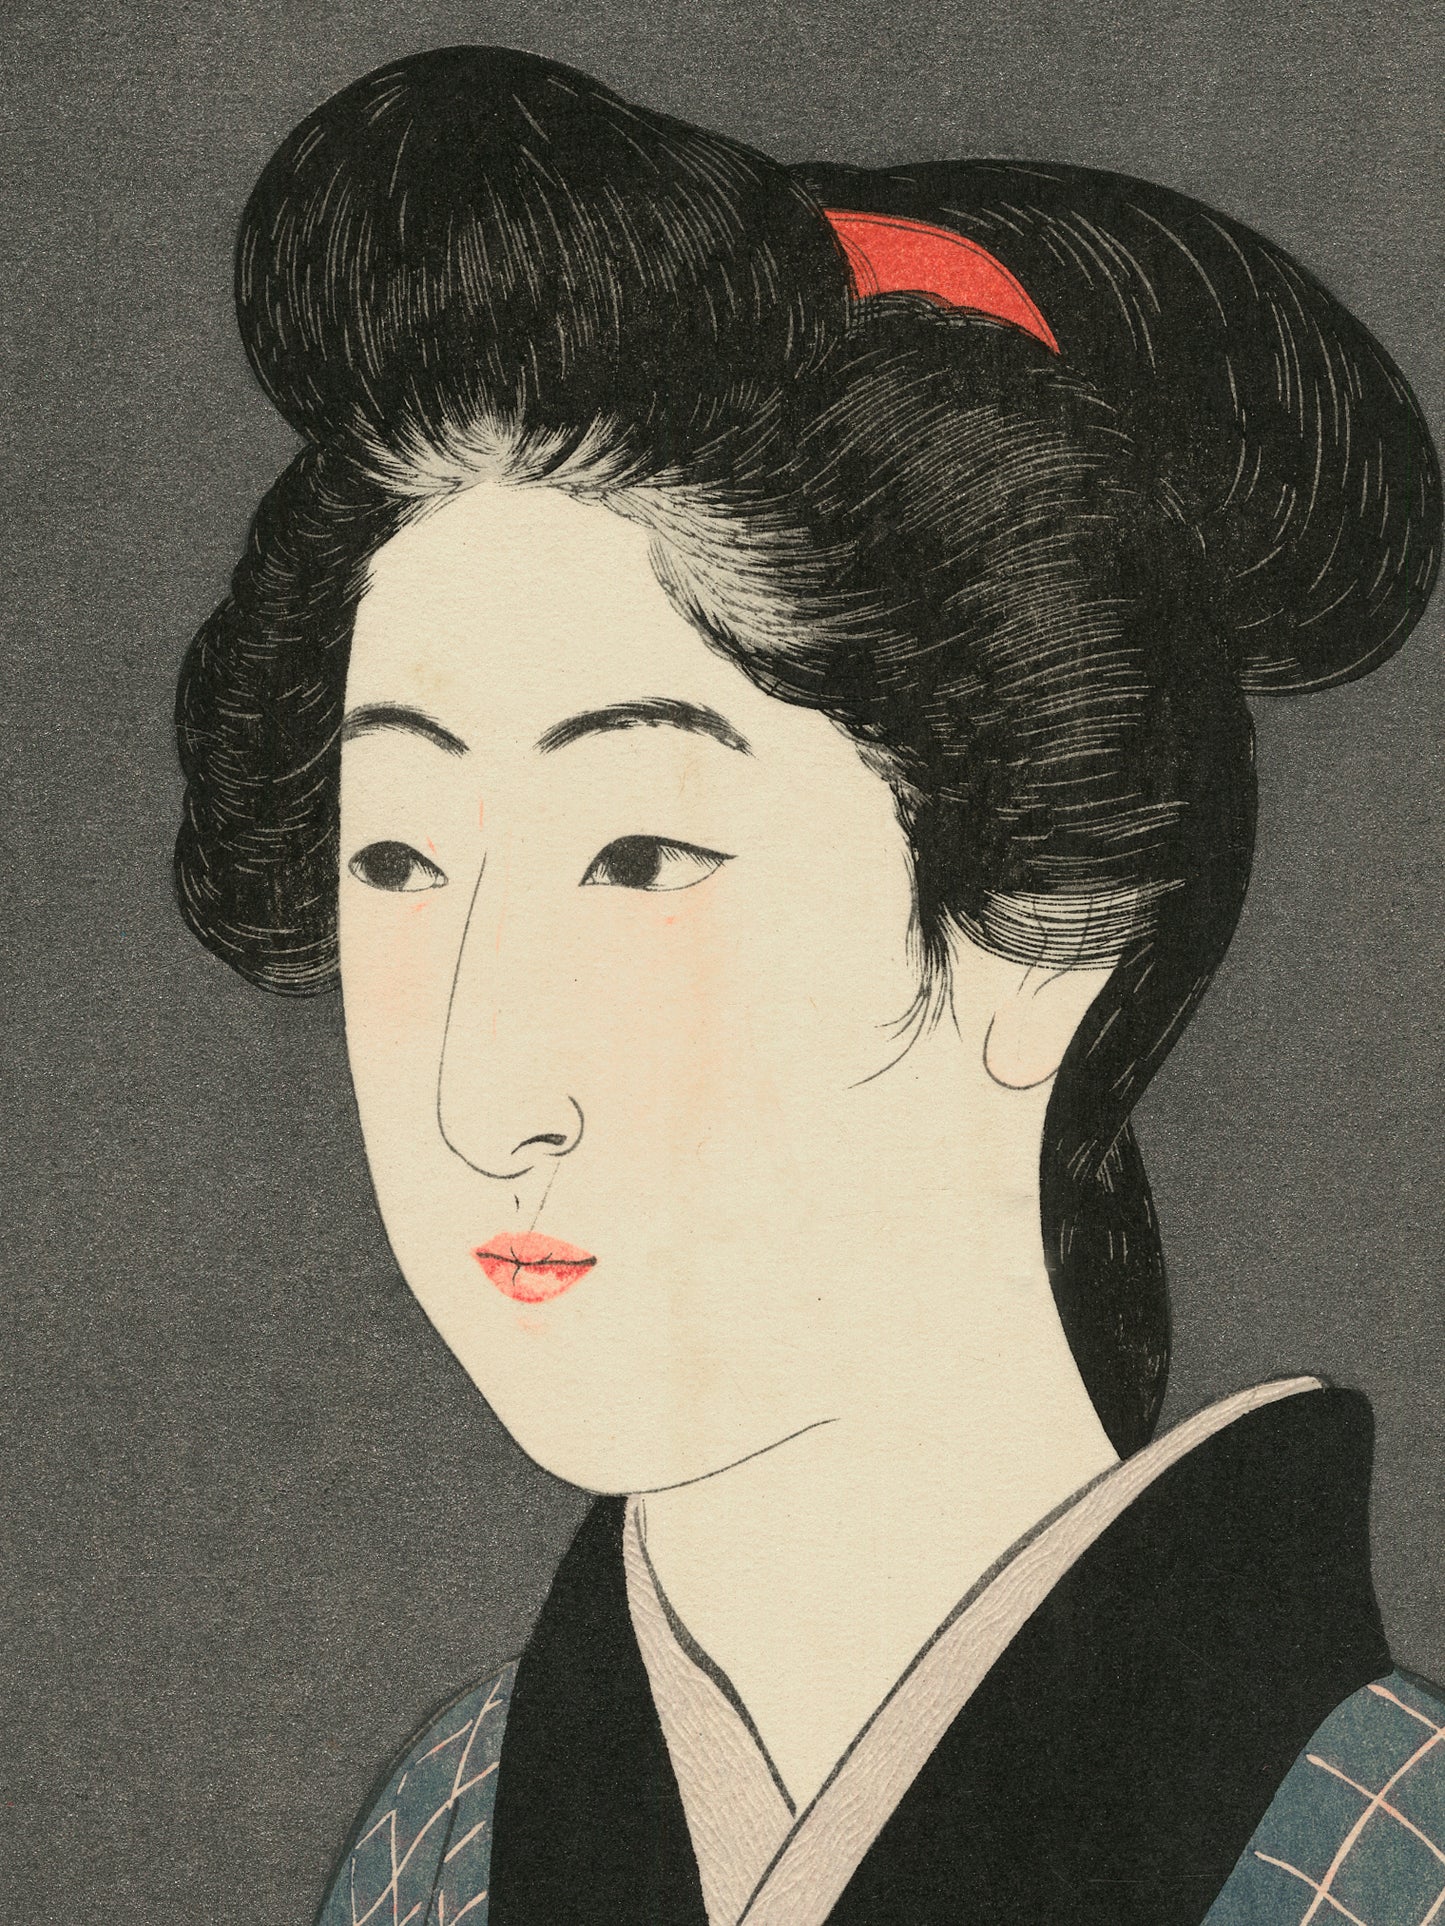 Estampes Japonaise détail de l’estampe sur le visage de la femme, les cheveux épinglés